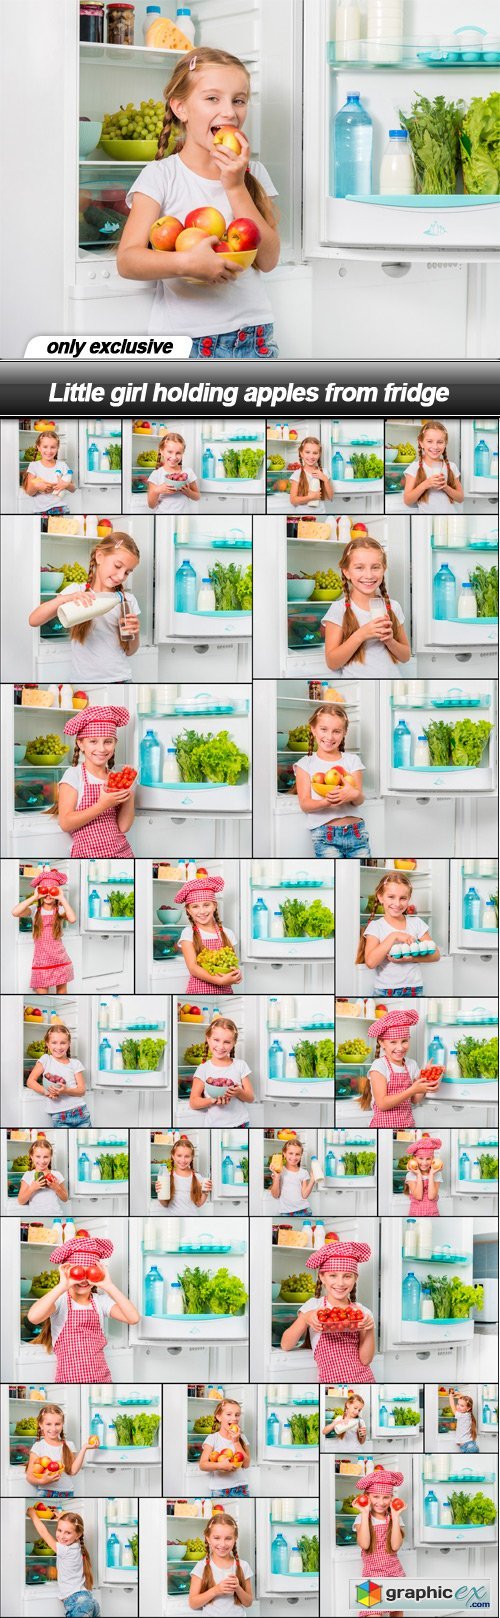 Little girl holding apples from fridge - 27 UHQ JPEG